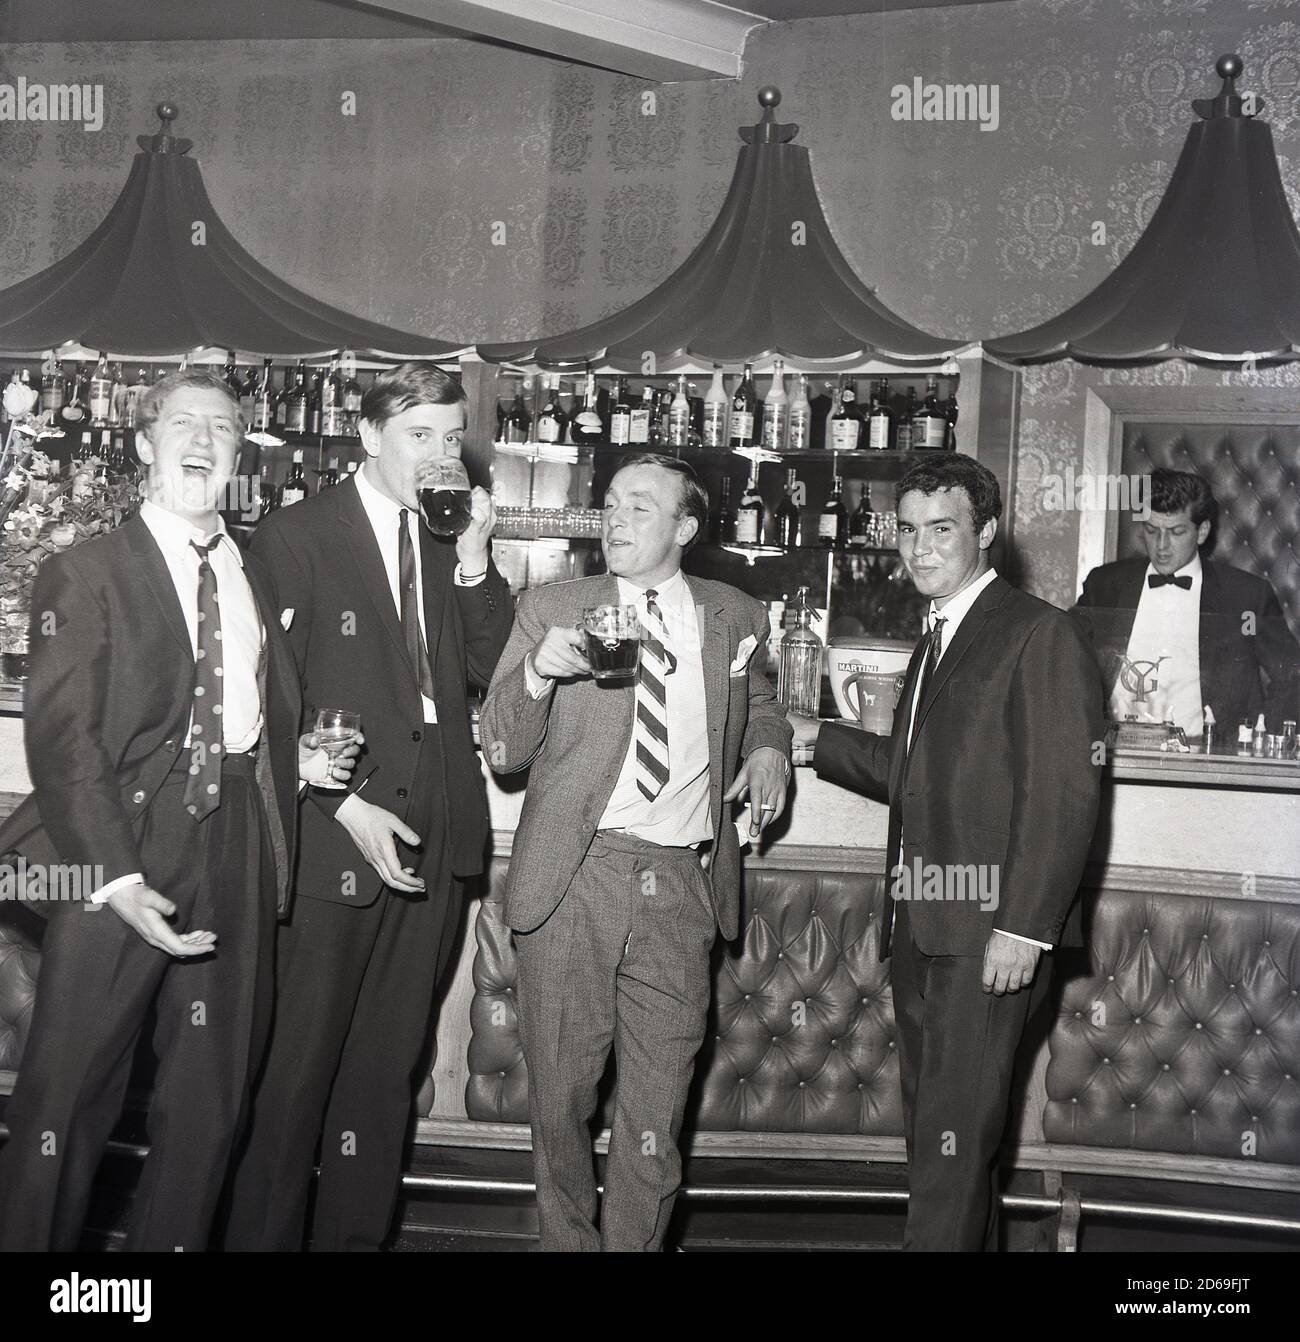 1960er, historisch, vier Männer in Anzügen, stehen an einer Bar, genießen einen Drink, Pints of Bitter und mit gutem Lachen, England, Großbritannien. Stockfoto